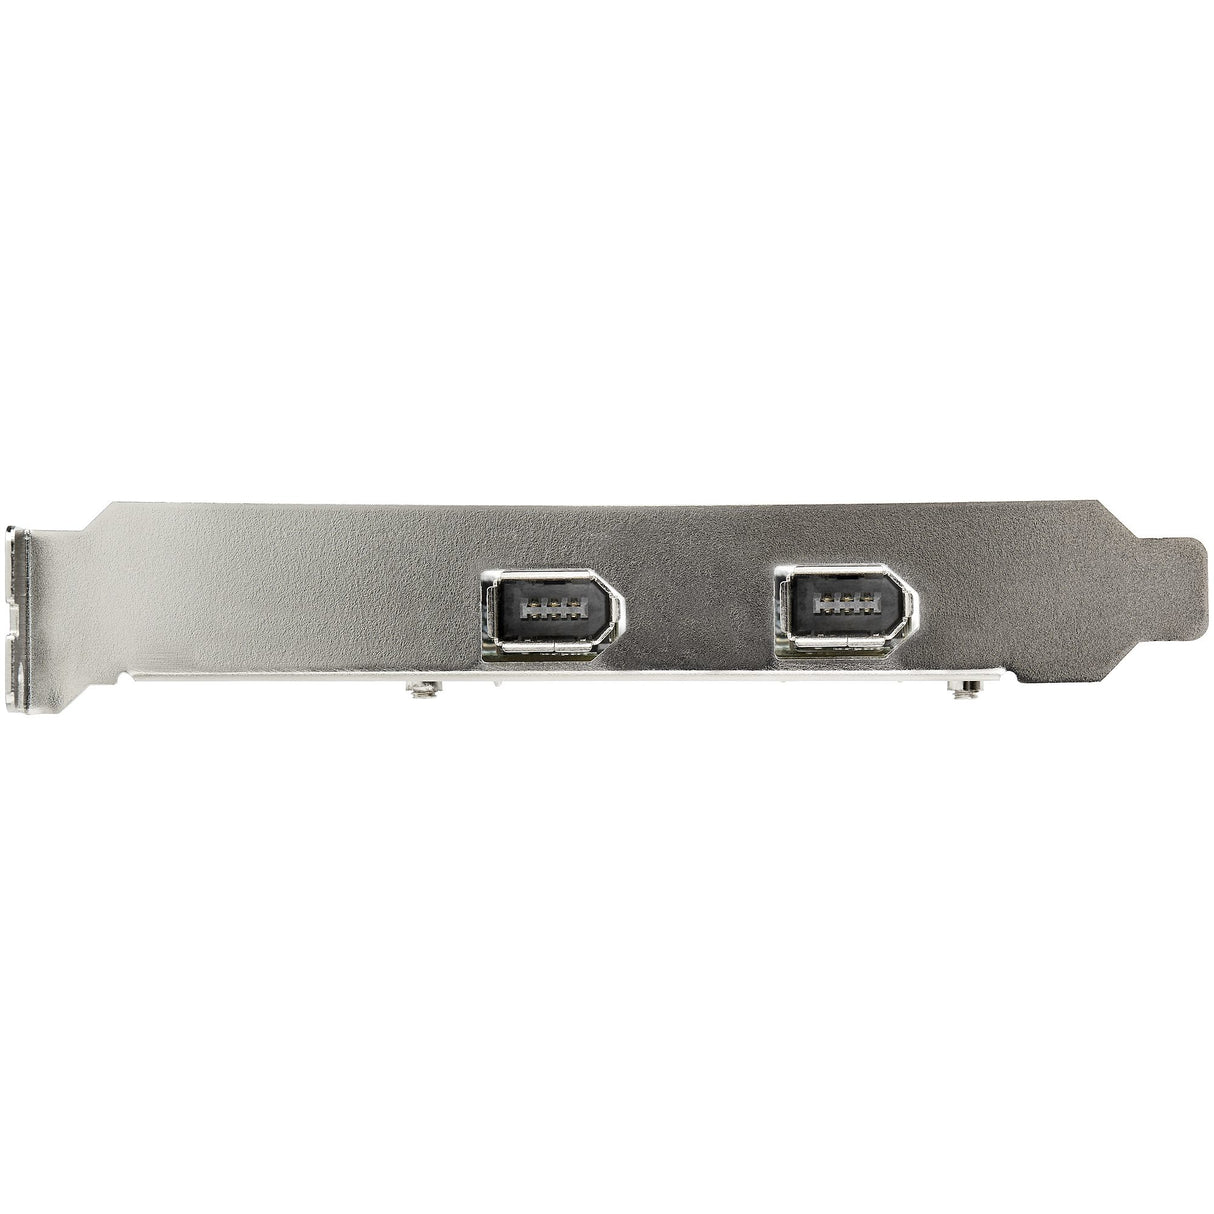 STARTECH 2 Port PCI Express FireWire Card - 1394a Firewire - TI TSB82AA2 Chipset | Windows & Mac Compatible (PEX1394A2V2) (PEX1394A2V2) STARTECH